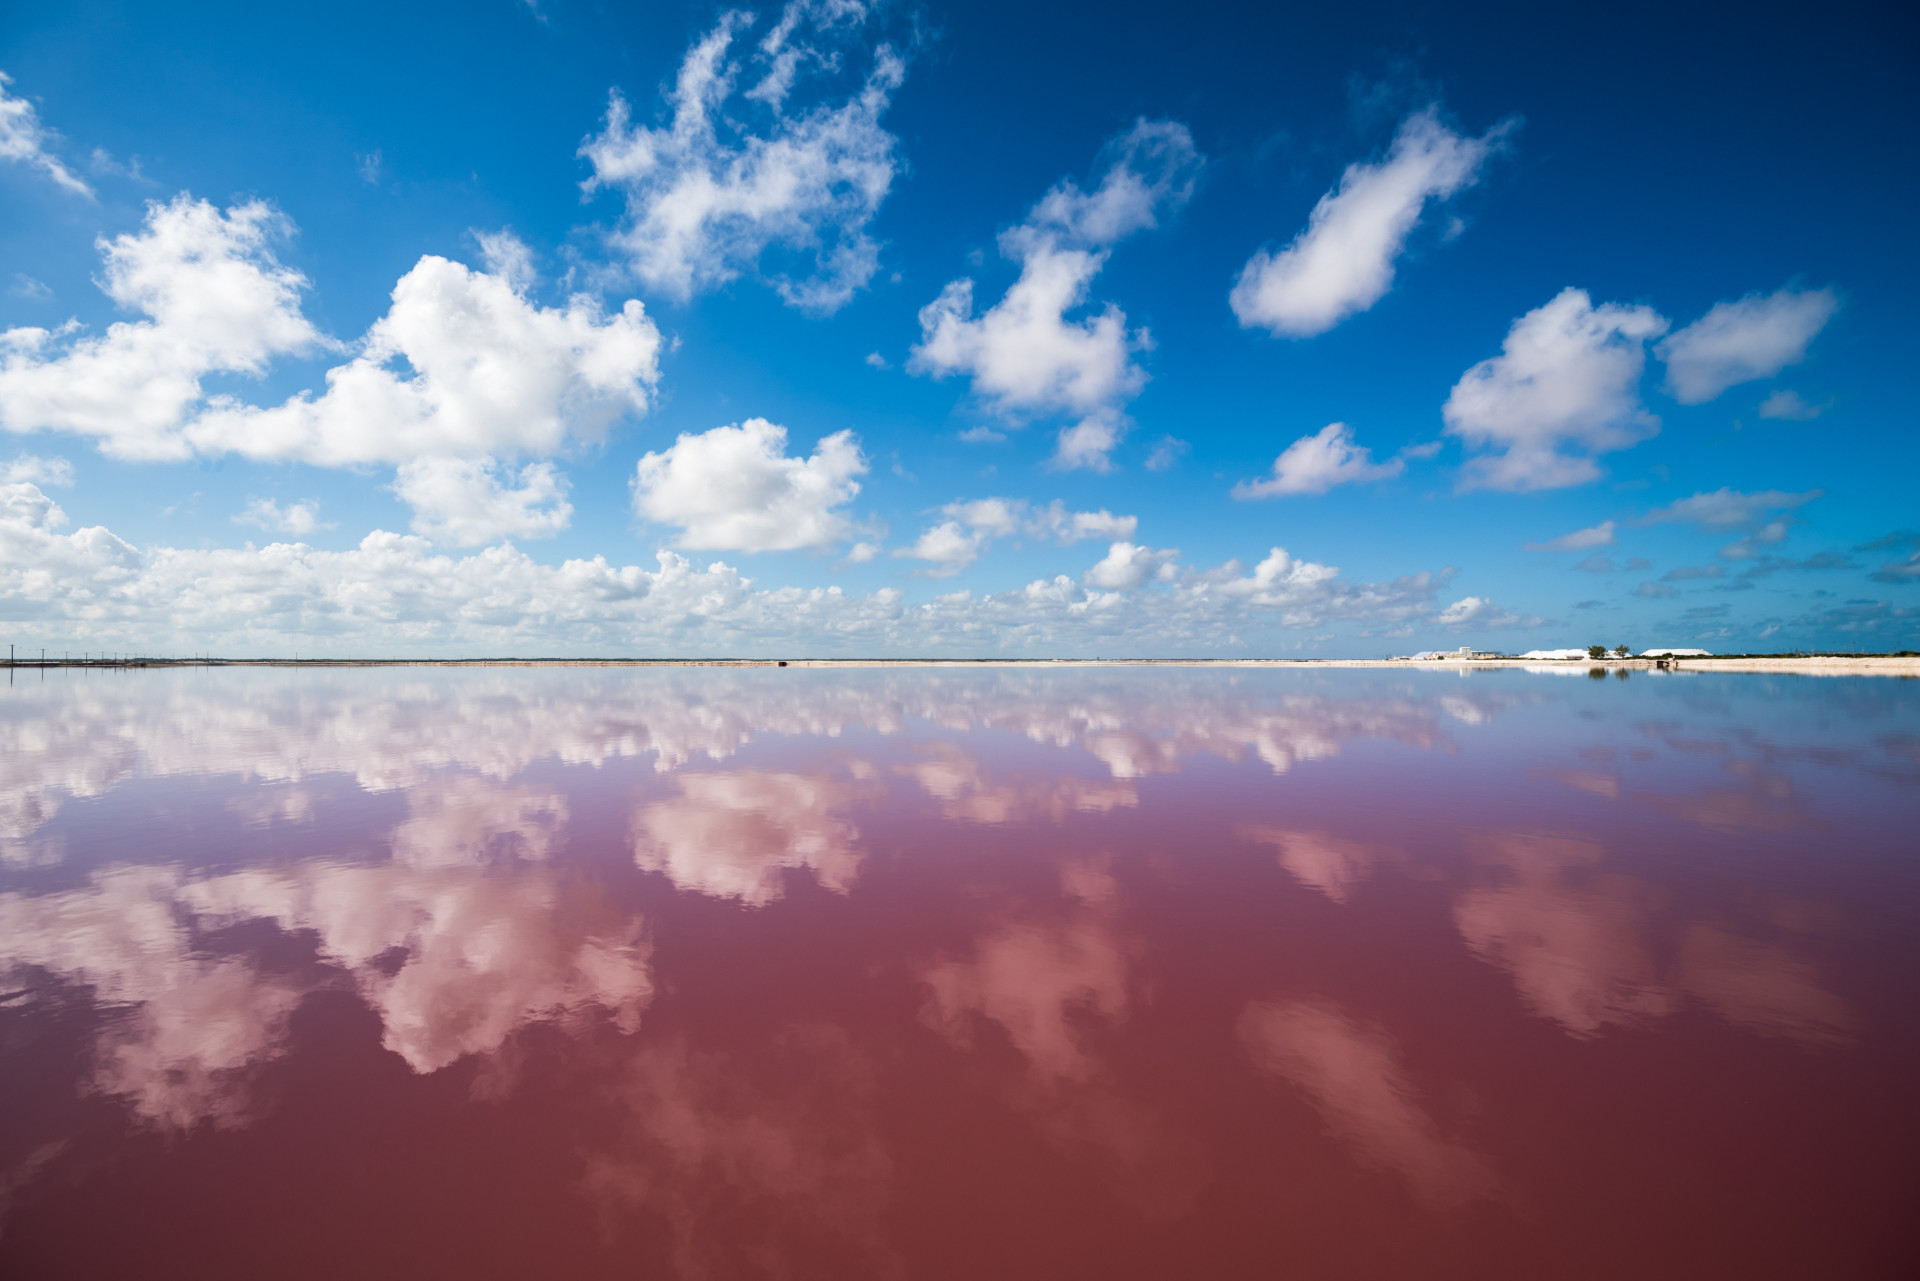 <p>Cette couleur rose est liée au dépôt du sel.</p> <p>Découvrez aussi: <a class="gs-title" href="https://www.starsinsider.com/fr/voyage/269324/le-mexique-vu-du-ciel" rel="noopener">Le <strong>Mexique</strong>, vu du ciel</a></p>